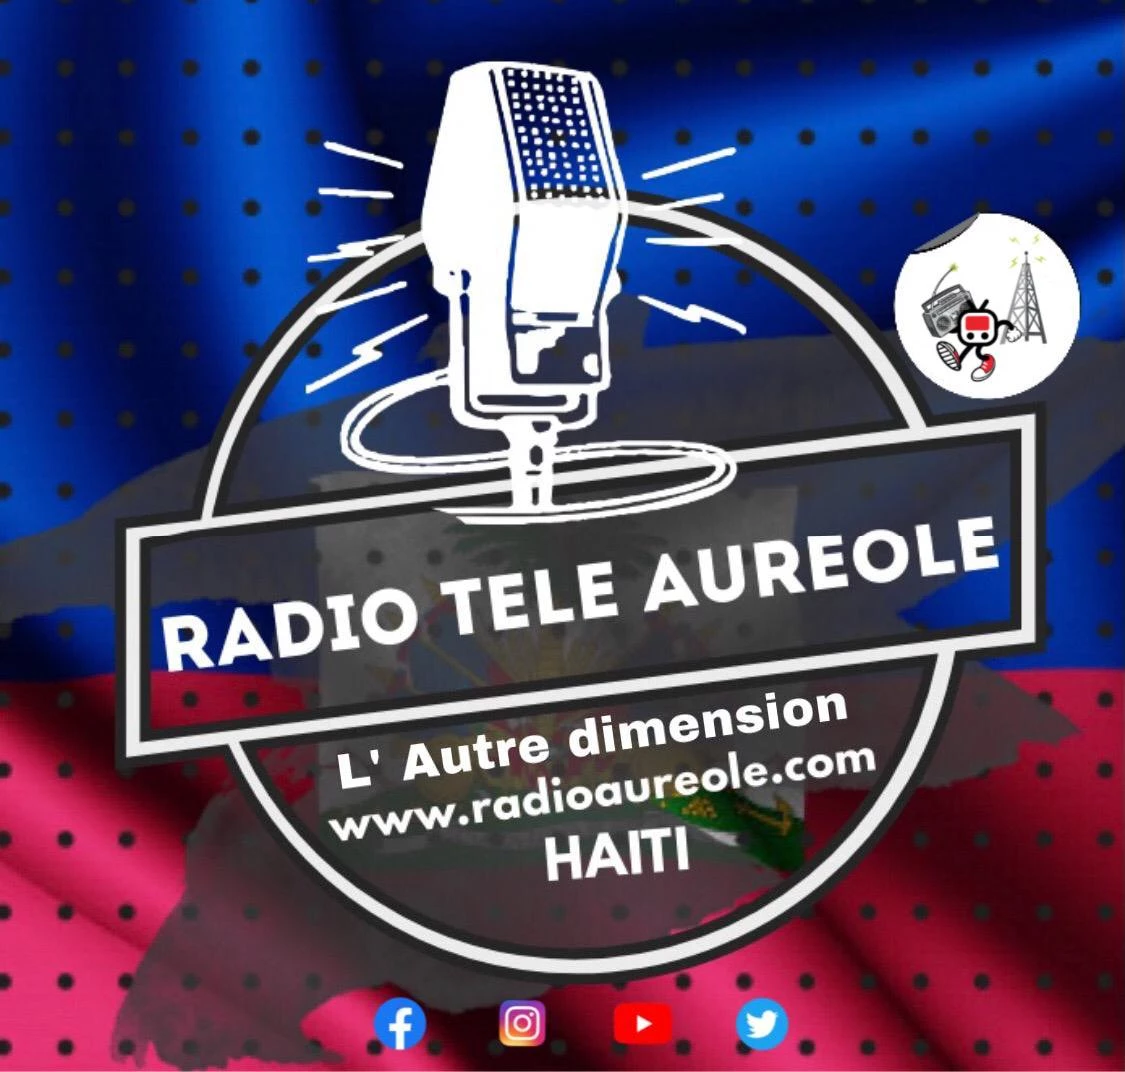 Radio Tele Aureole 